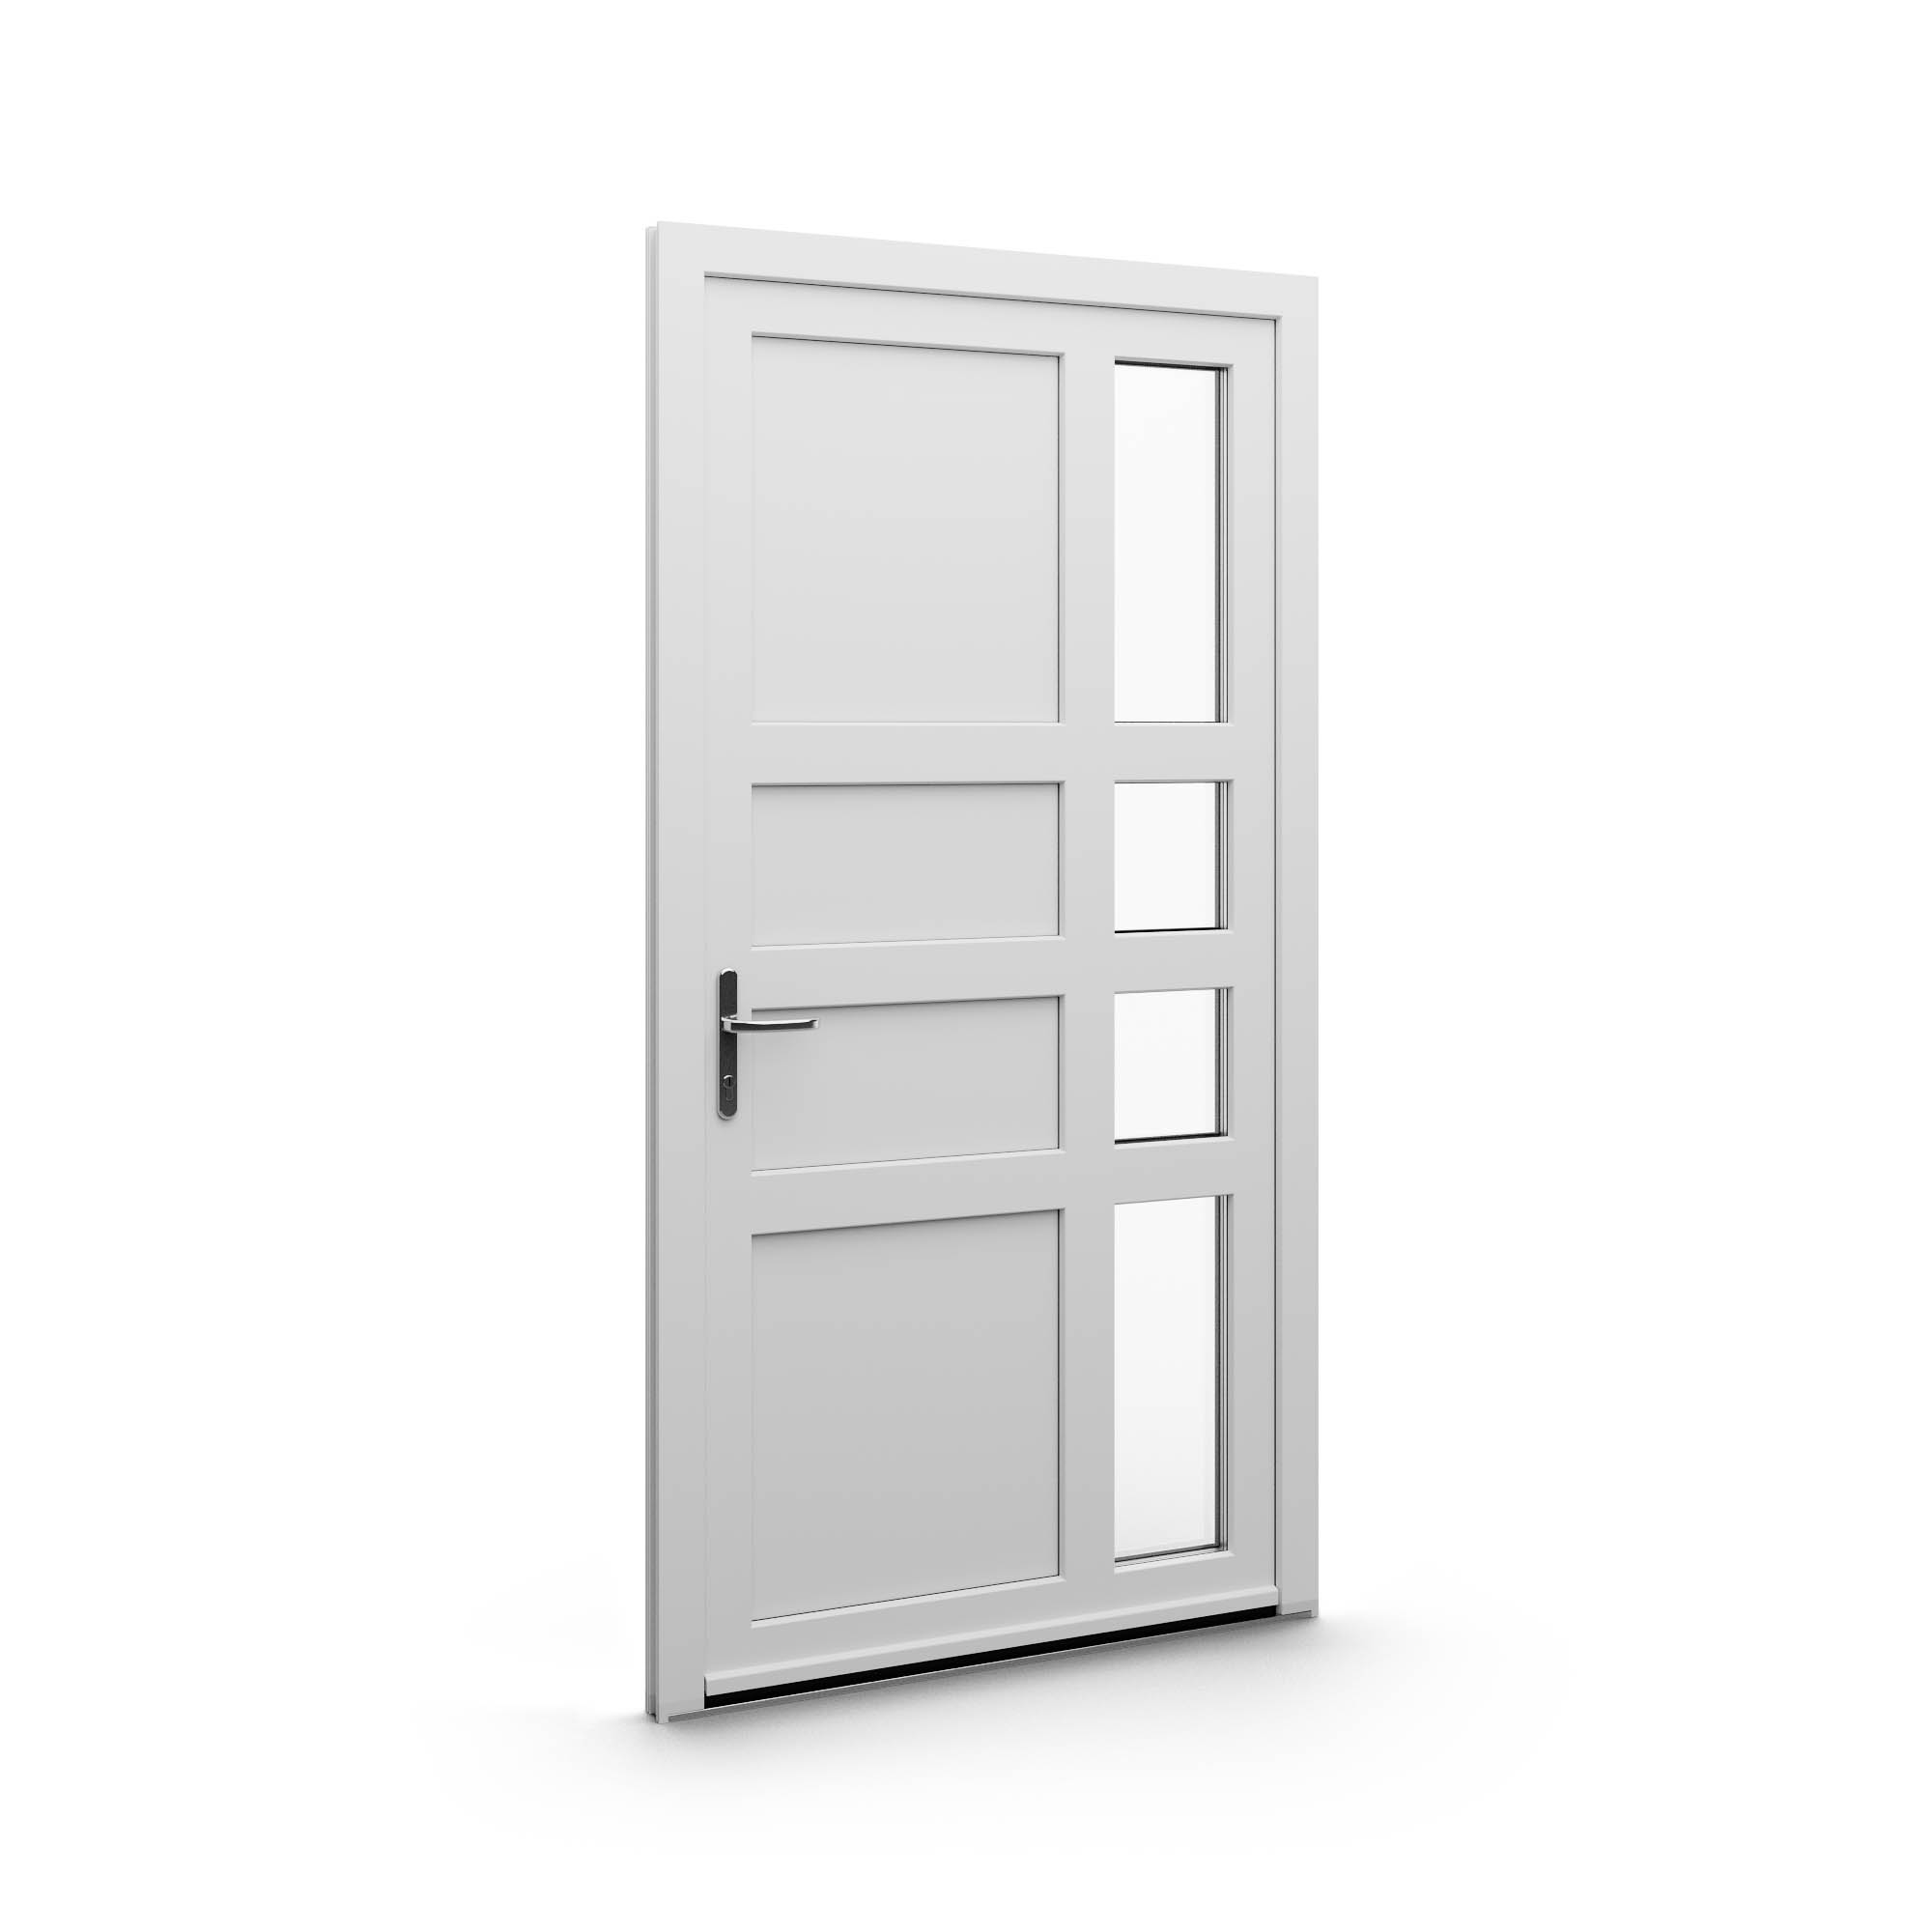 Modelové PVC dvere